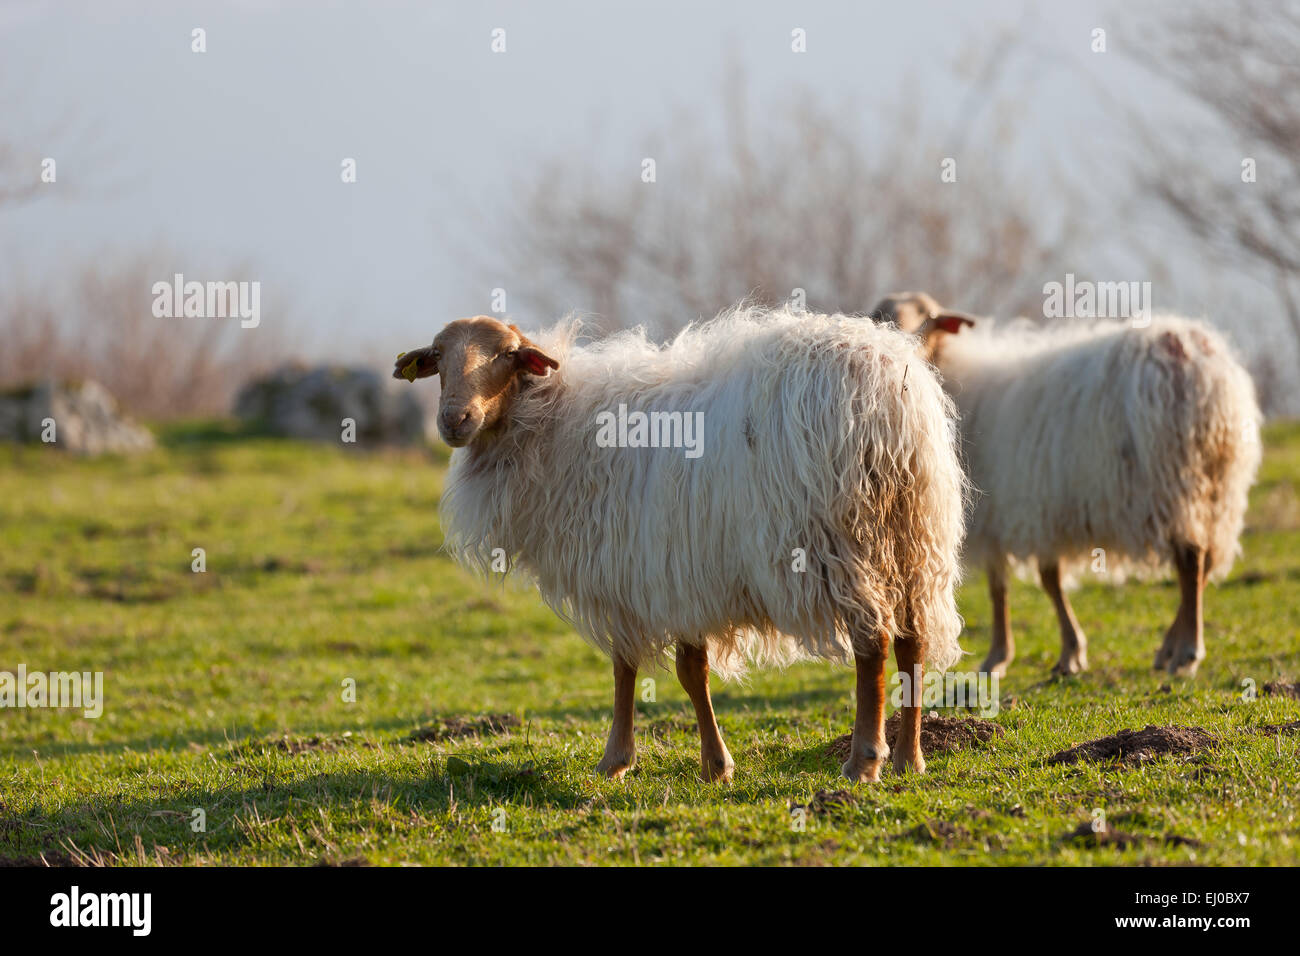 Some sheeps in Asiego, near the Picos de Europa National Park, Asturias, Spain. Stock Photo